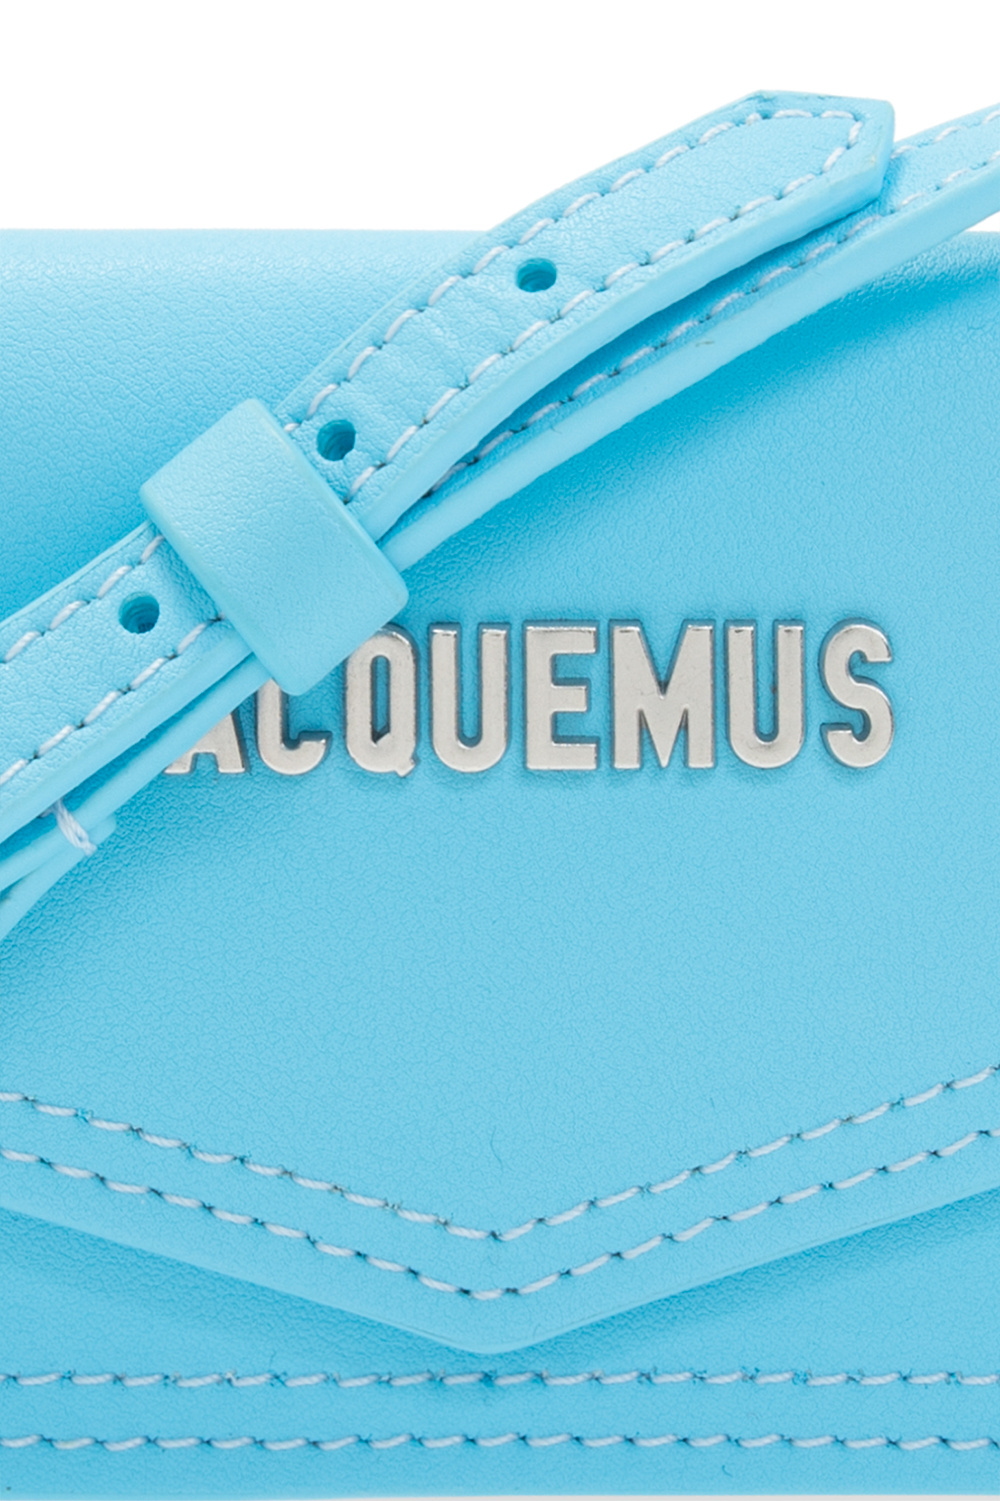 Blue 'Le Porte Azur' strapped card case Jacquemus - IetpShops Congo